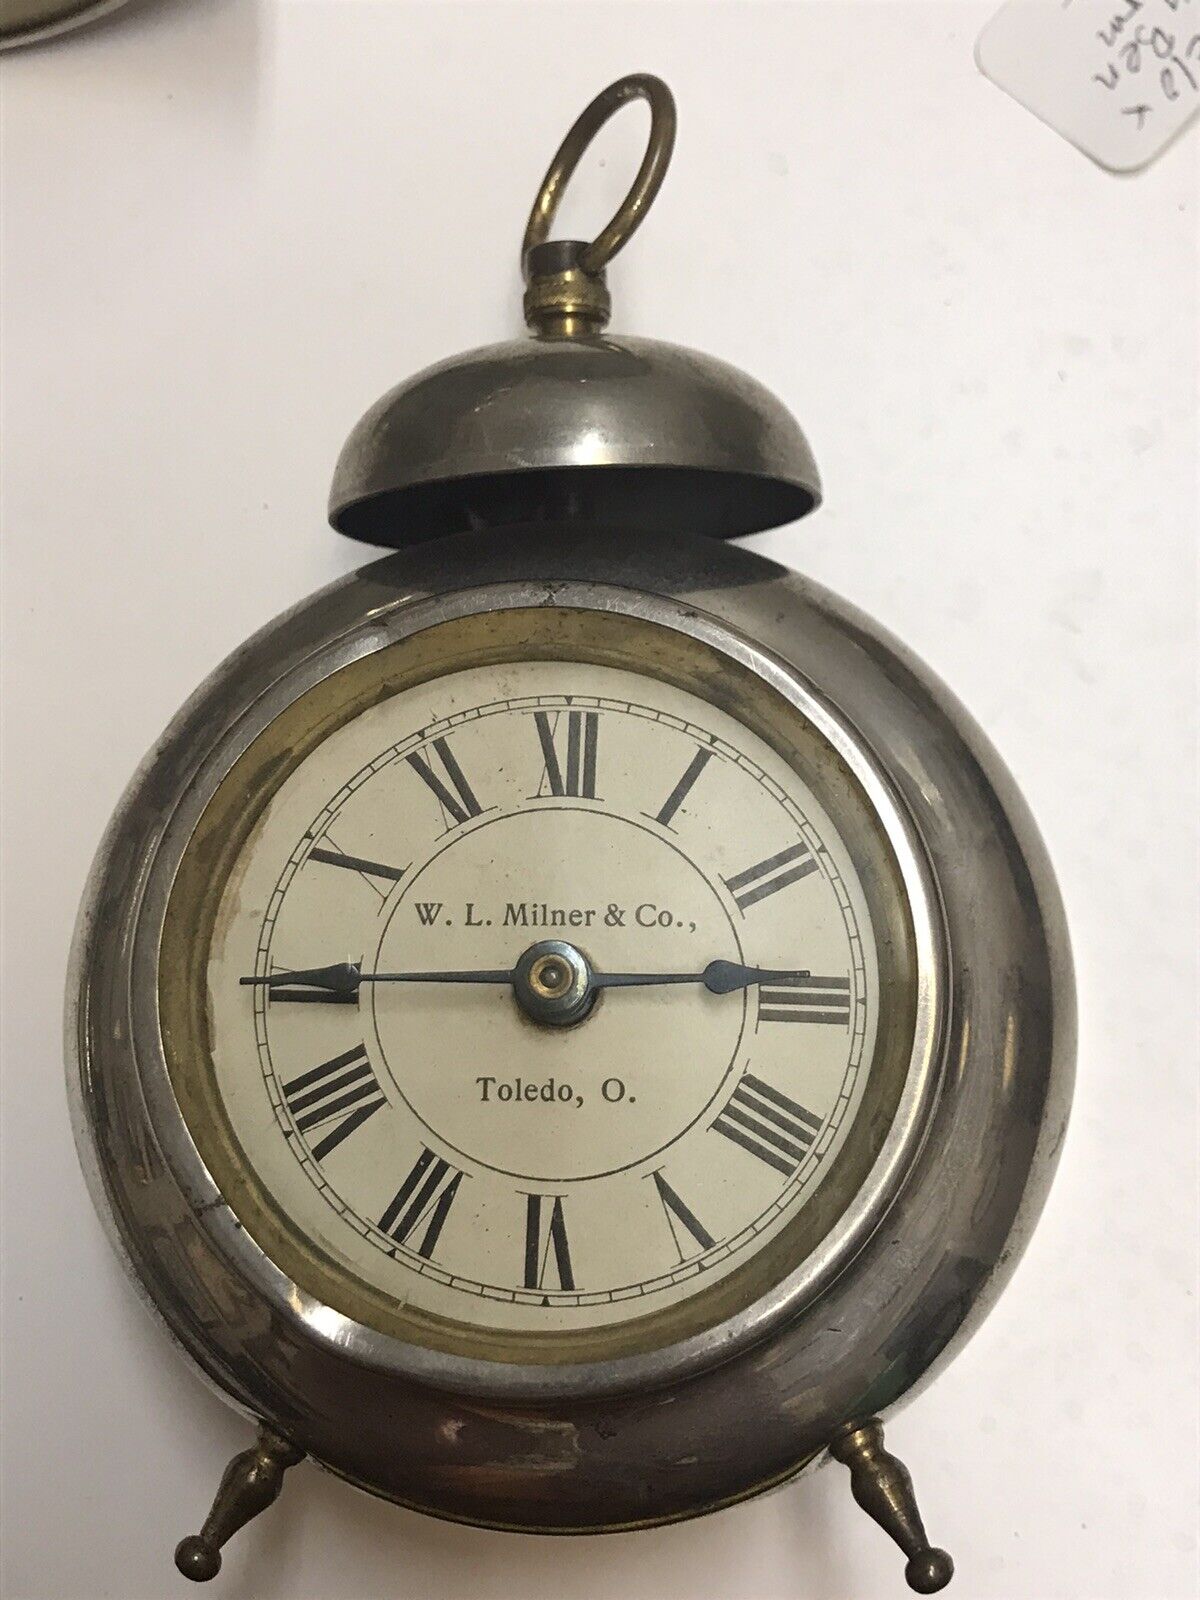 1902 Advertising Alarm Clock W. L. Milner Dept Store Toledo Ohio